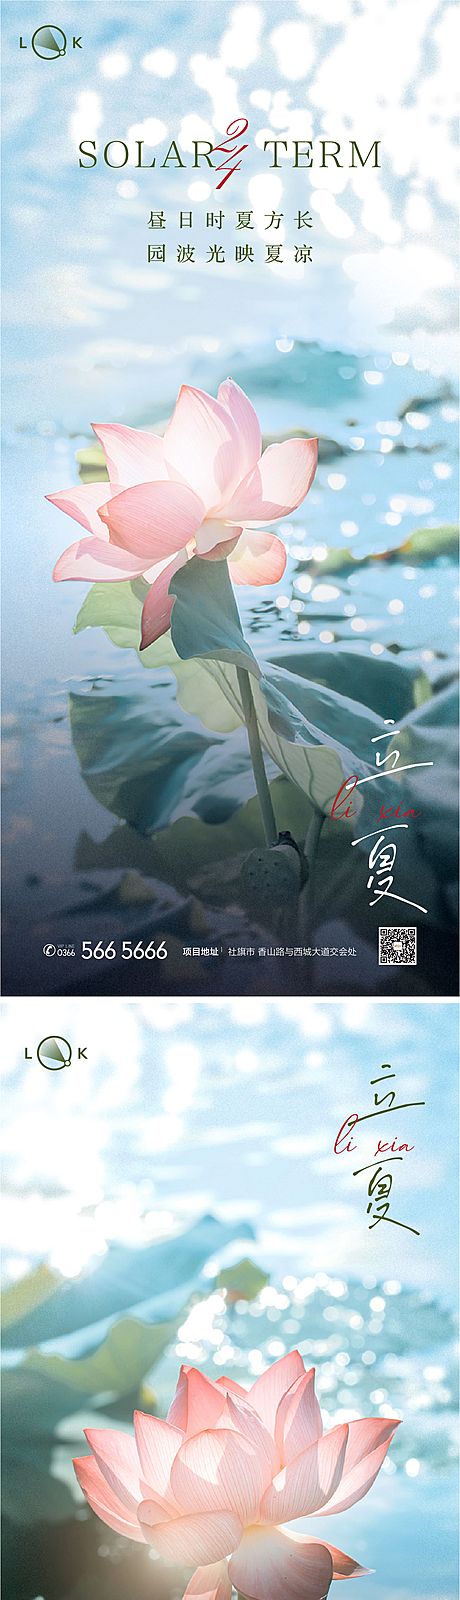 仙图网-立夏二十四节气系列海报